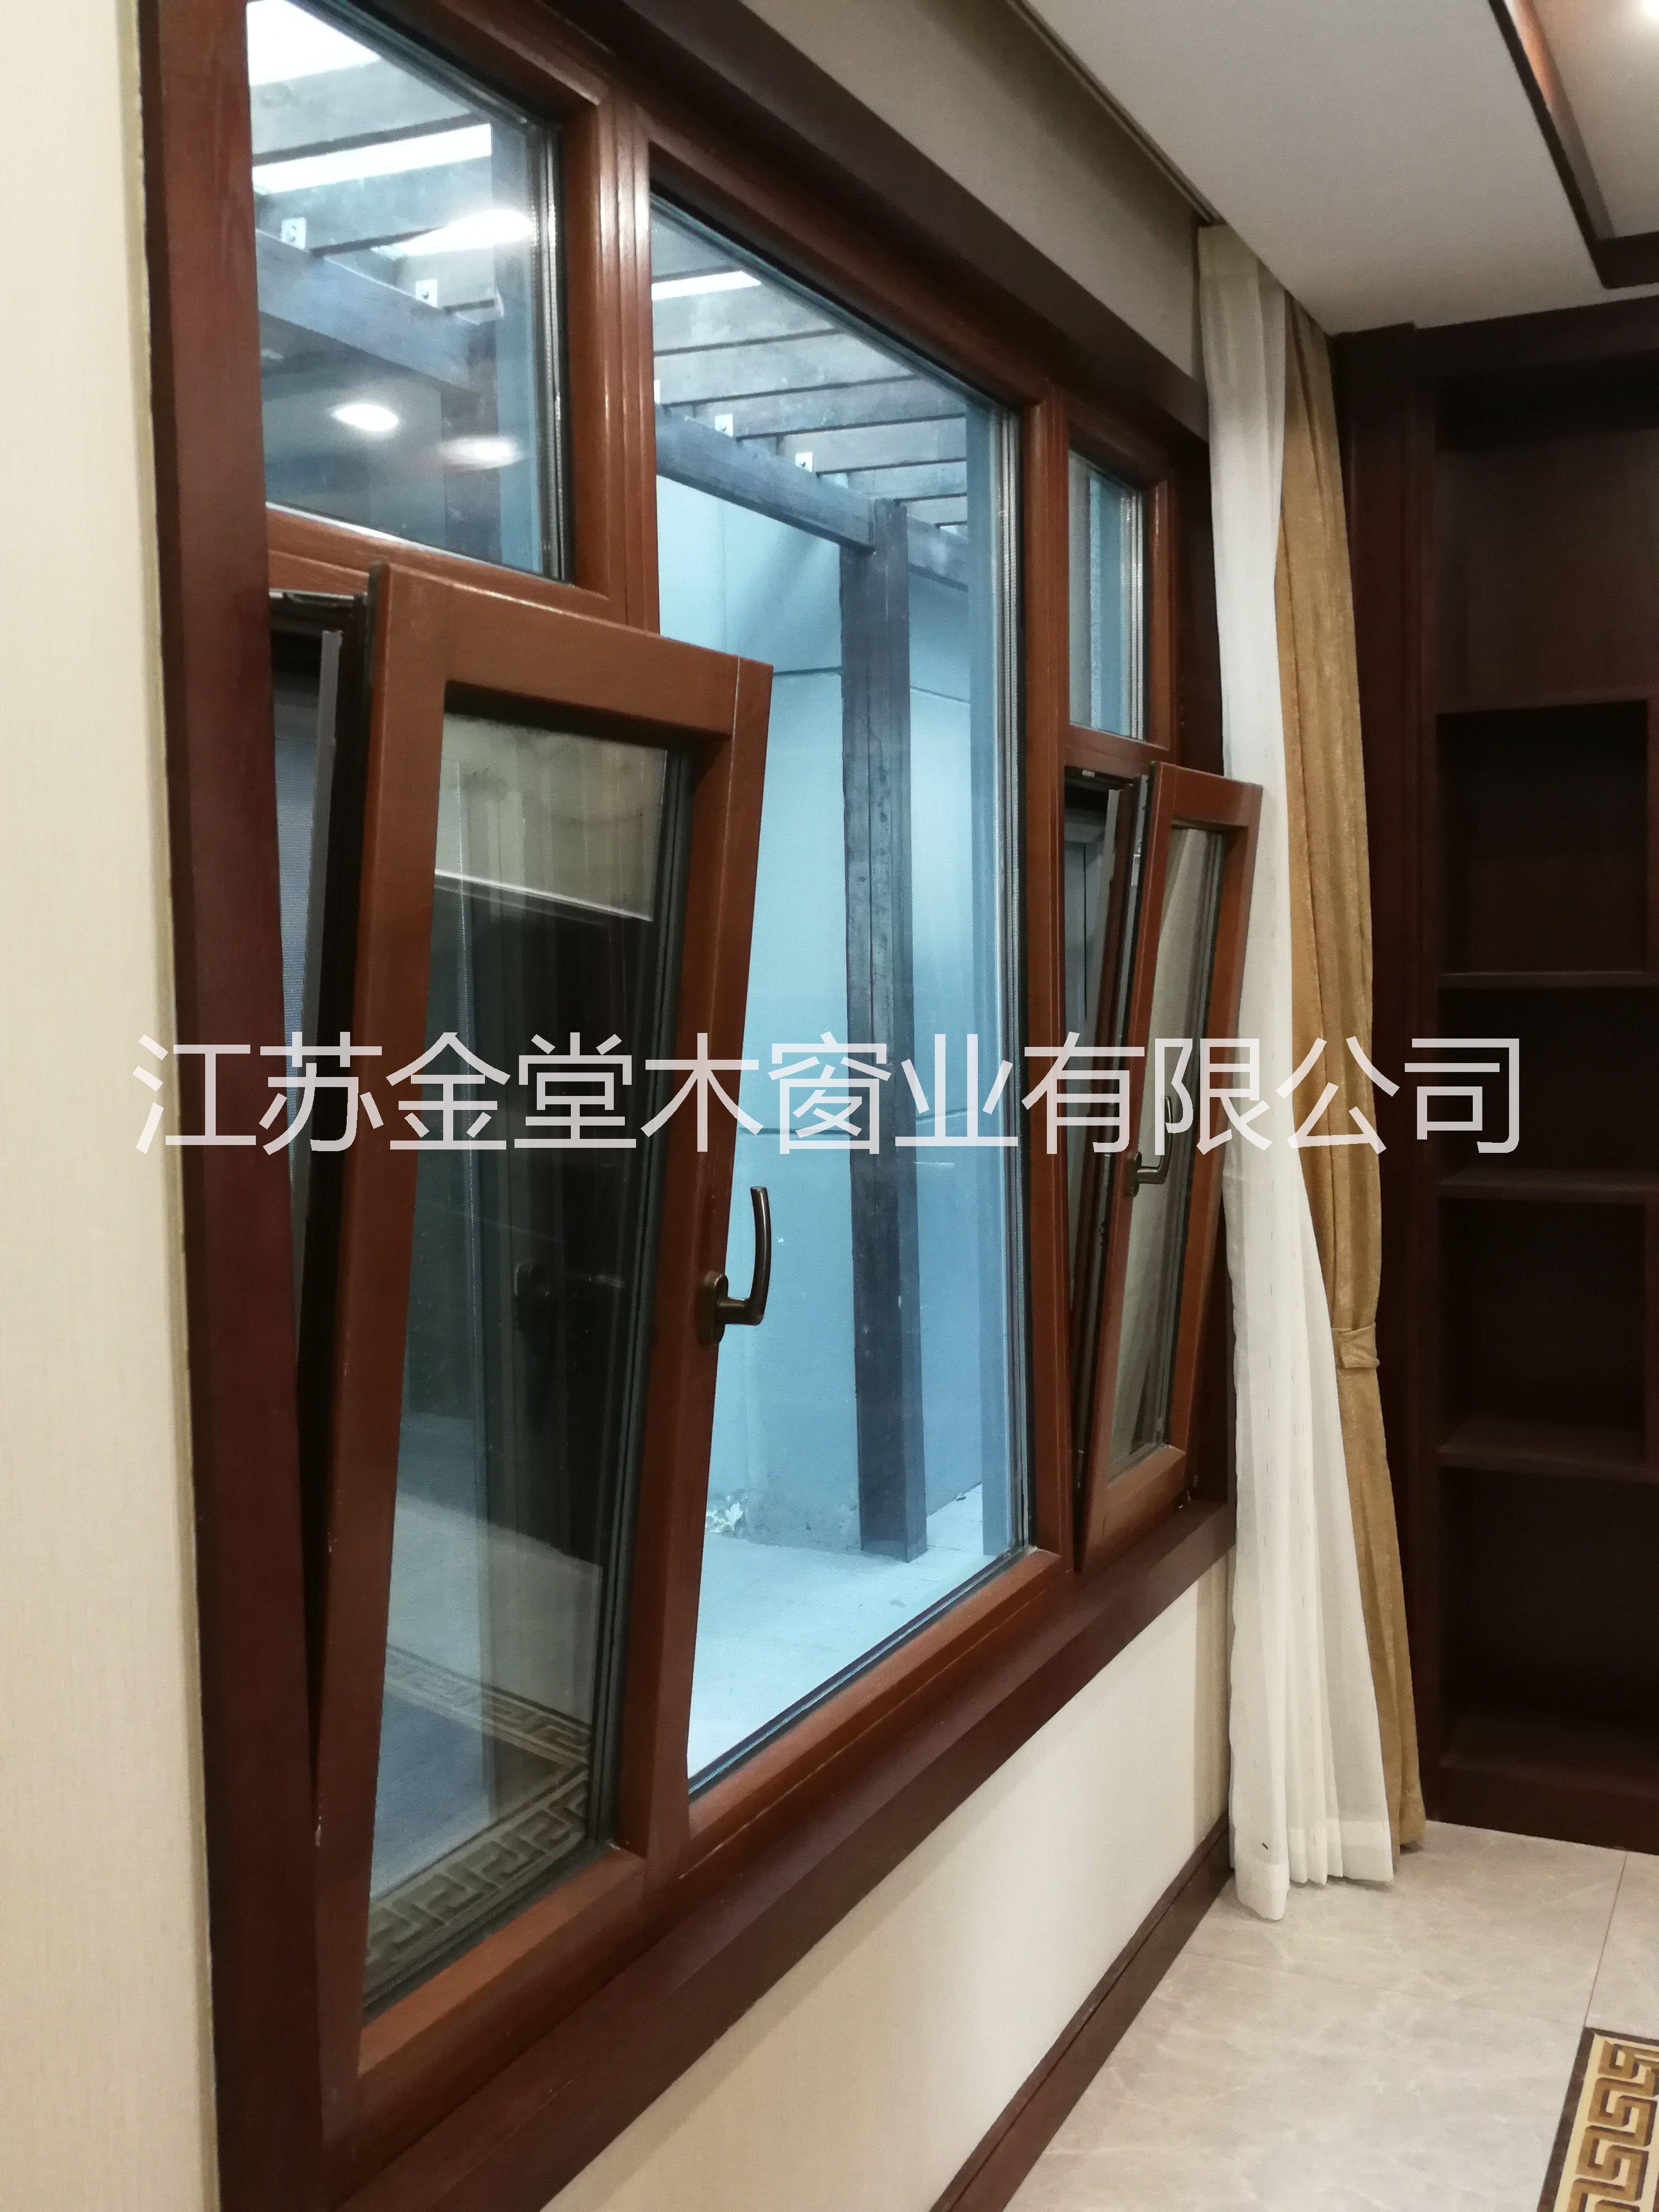 金堂木铝包木门窗J98厂家直销门窗革命第四代产物铝包木窗